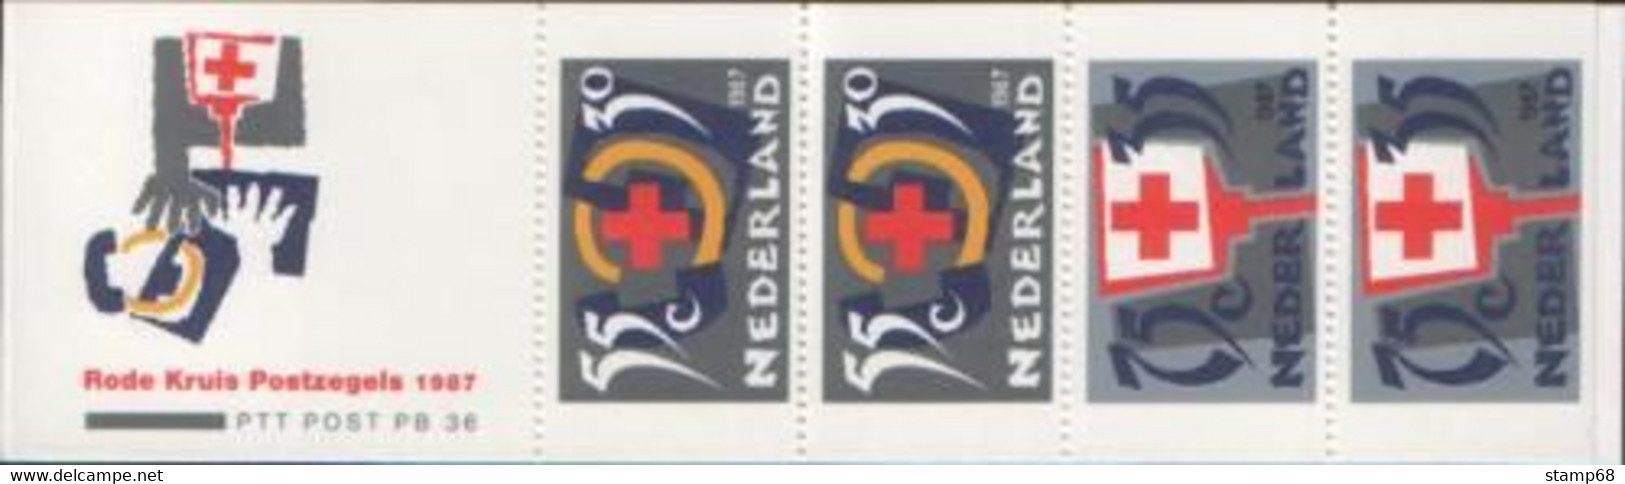 Nederland NVPH PB36 Rode Kruis 1987 MNH Postfris Red Cross - Booklets & Coils